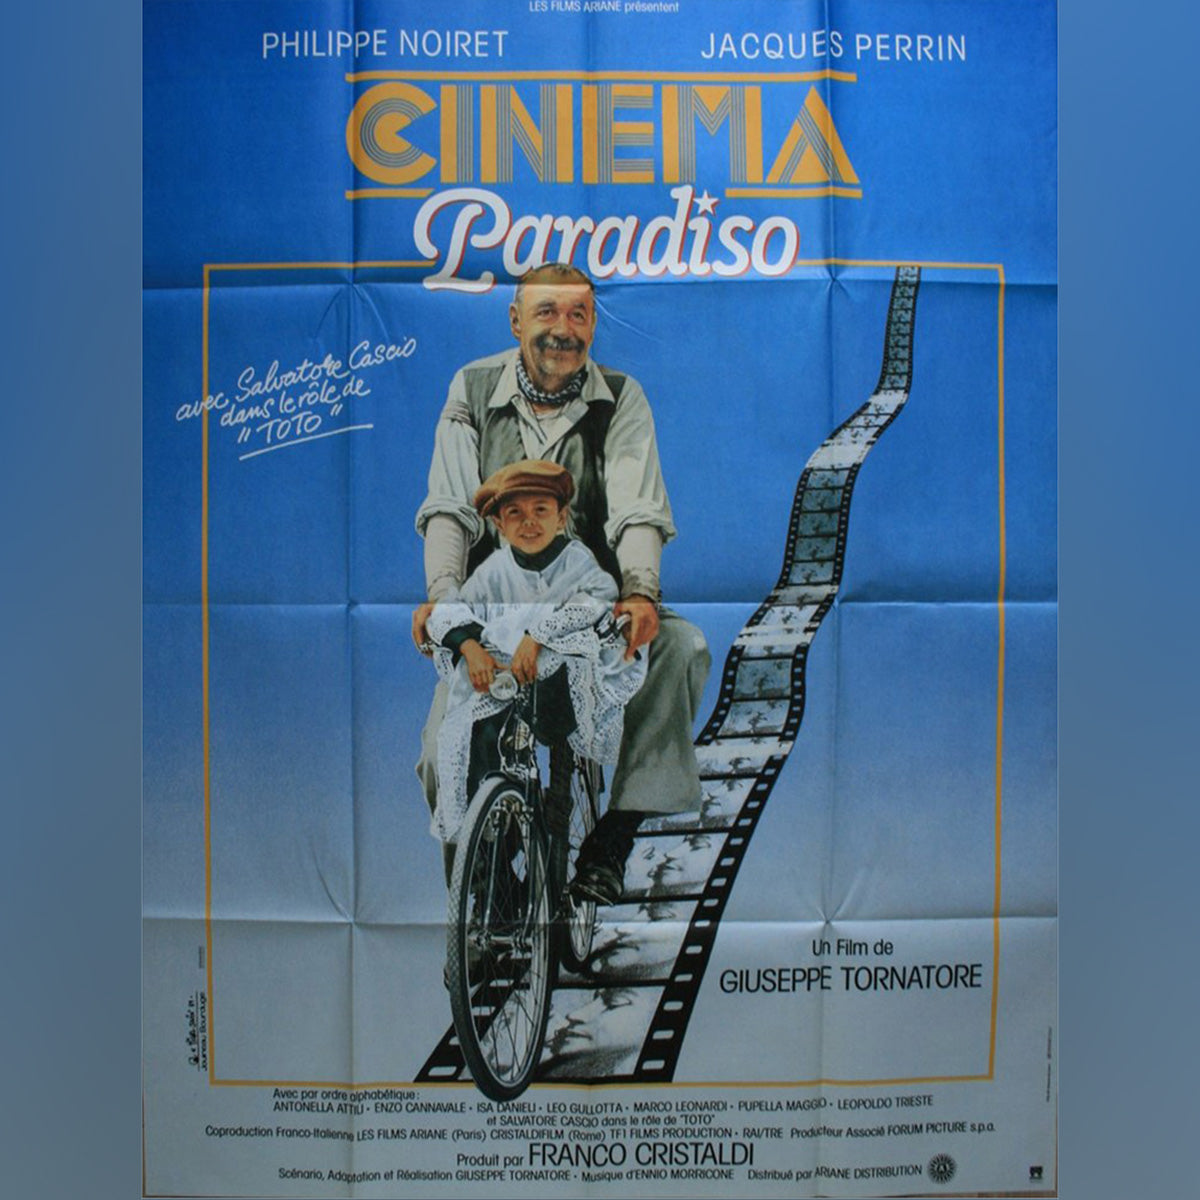 Original Movie Poster of Cinema Paradiso (1988)